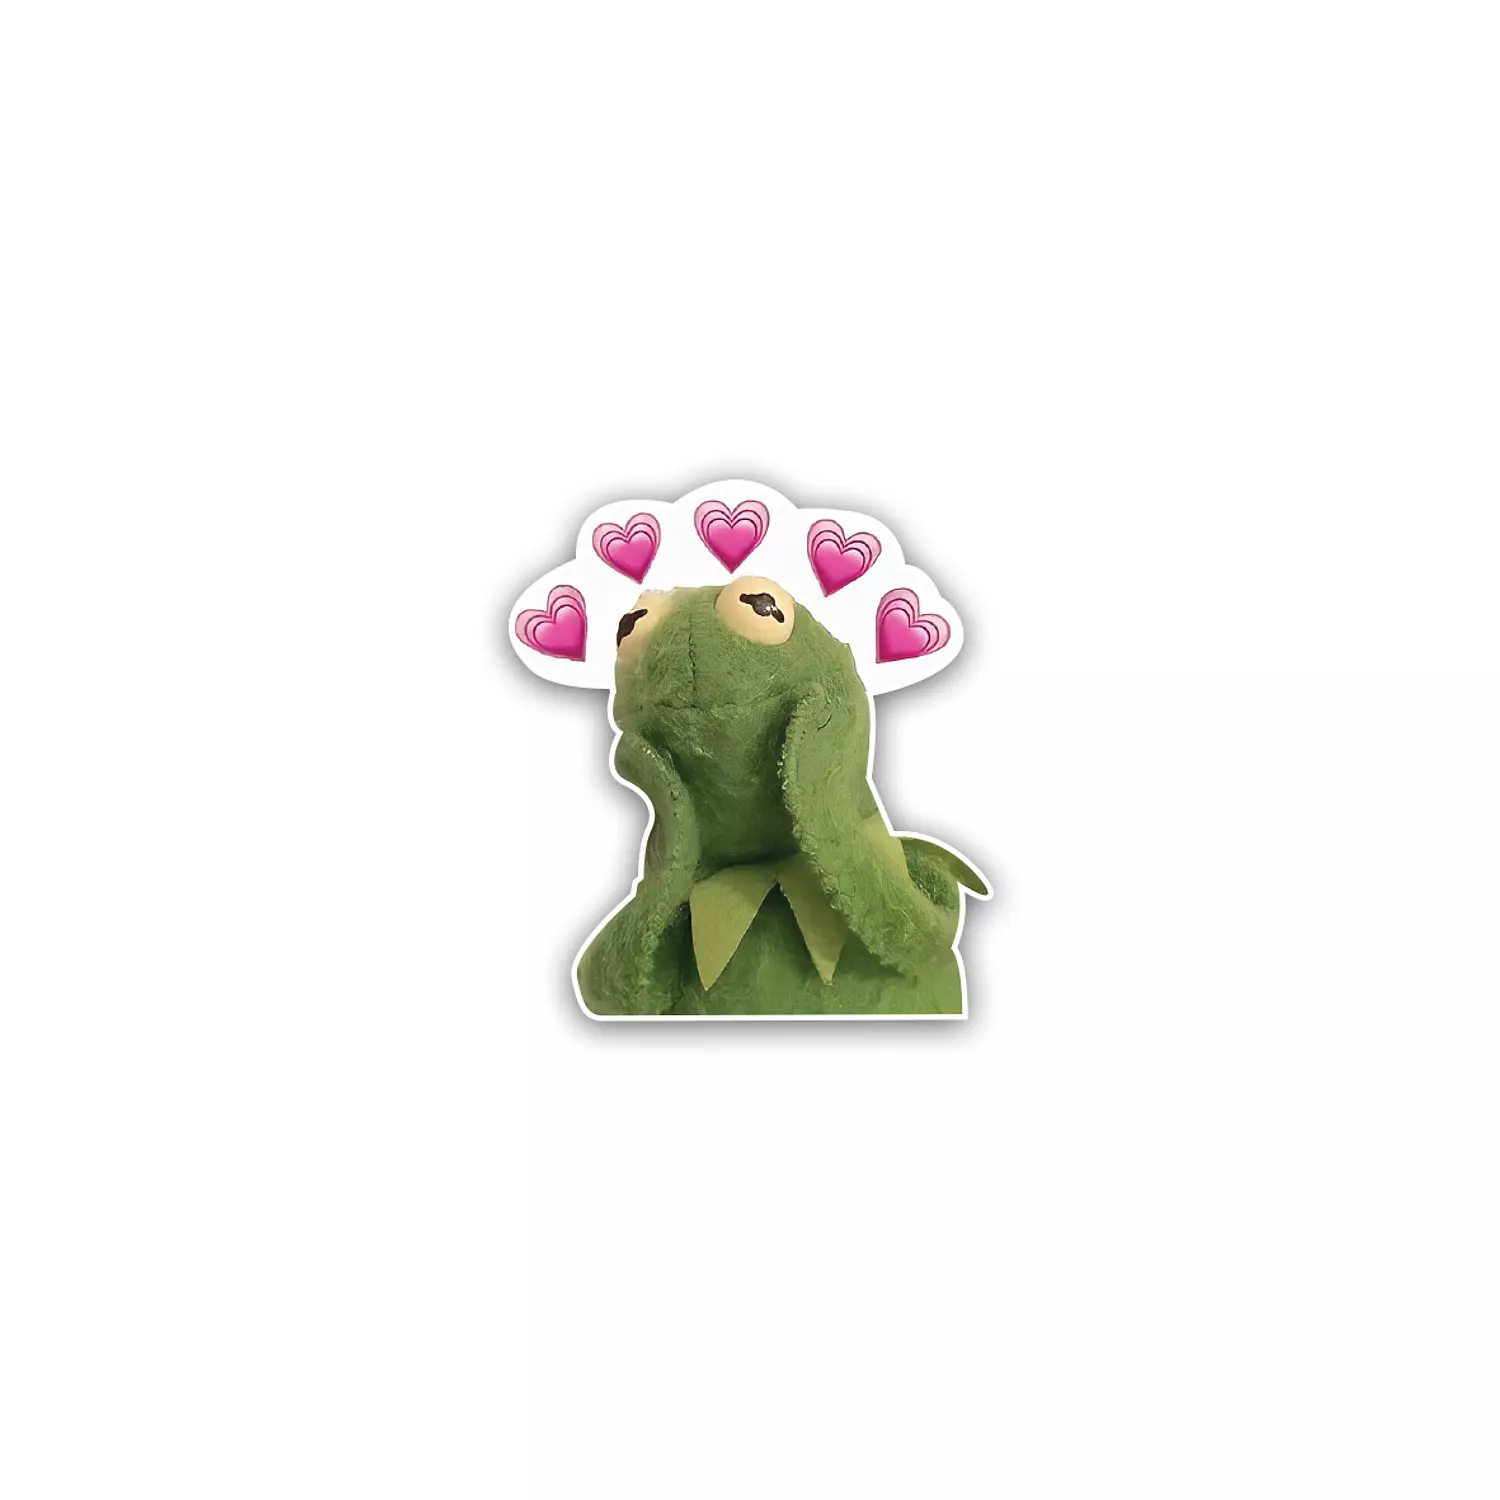 Kermit Frog meme hearts 🥰 hover image